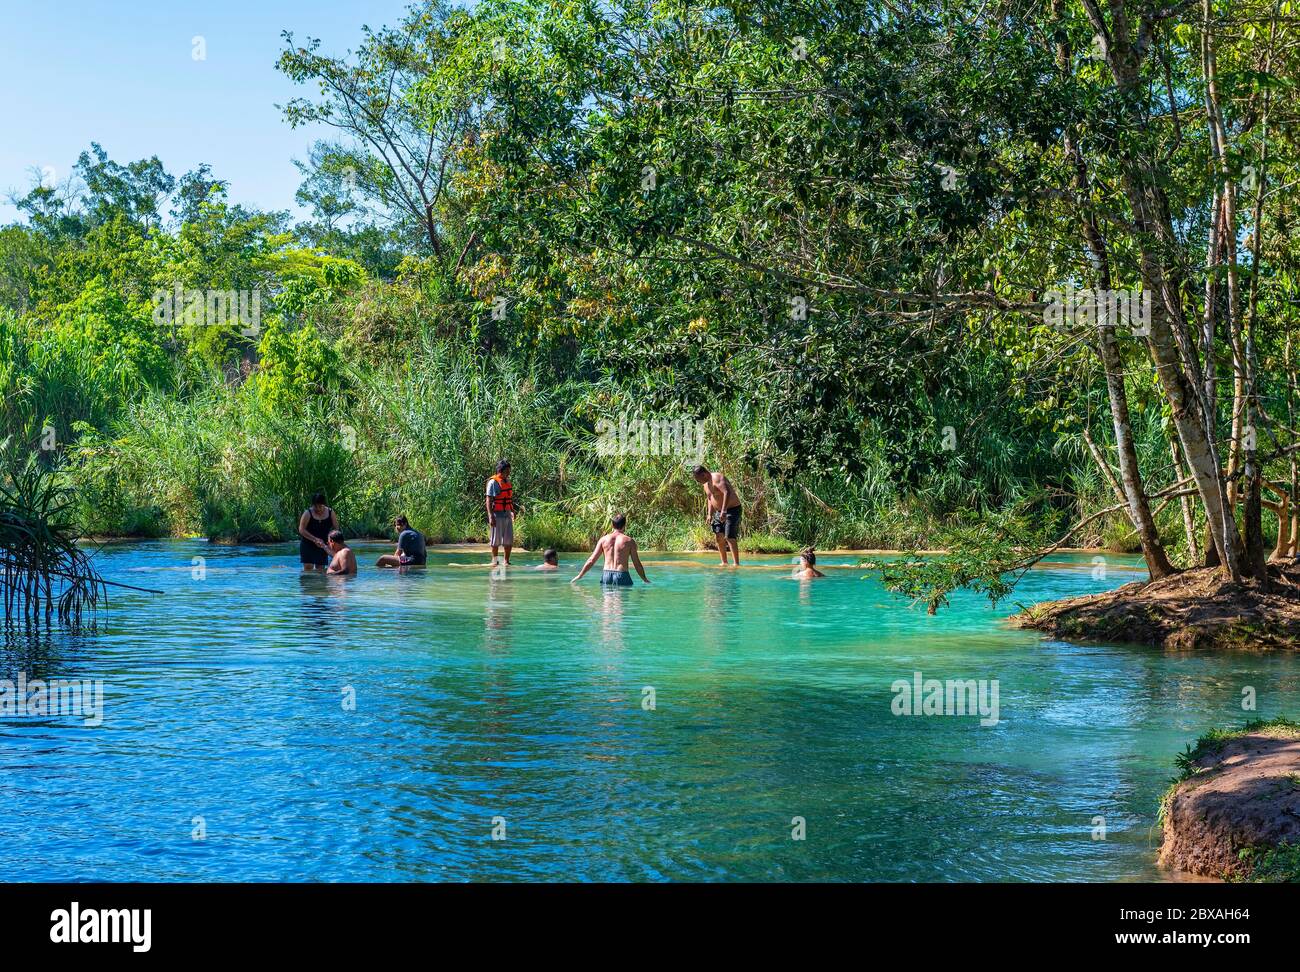 Le persone nuotano e si rilassano nelle piscine d'acqua turchesi e nelle cascate nella foresta pluviale e nella giungla nello stato messicano di Chiapas, Messico. Foto Stock